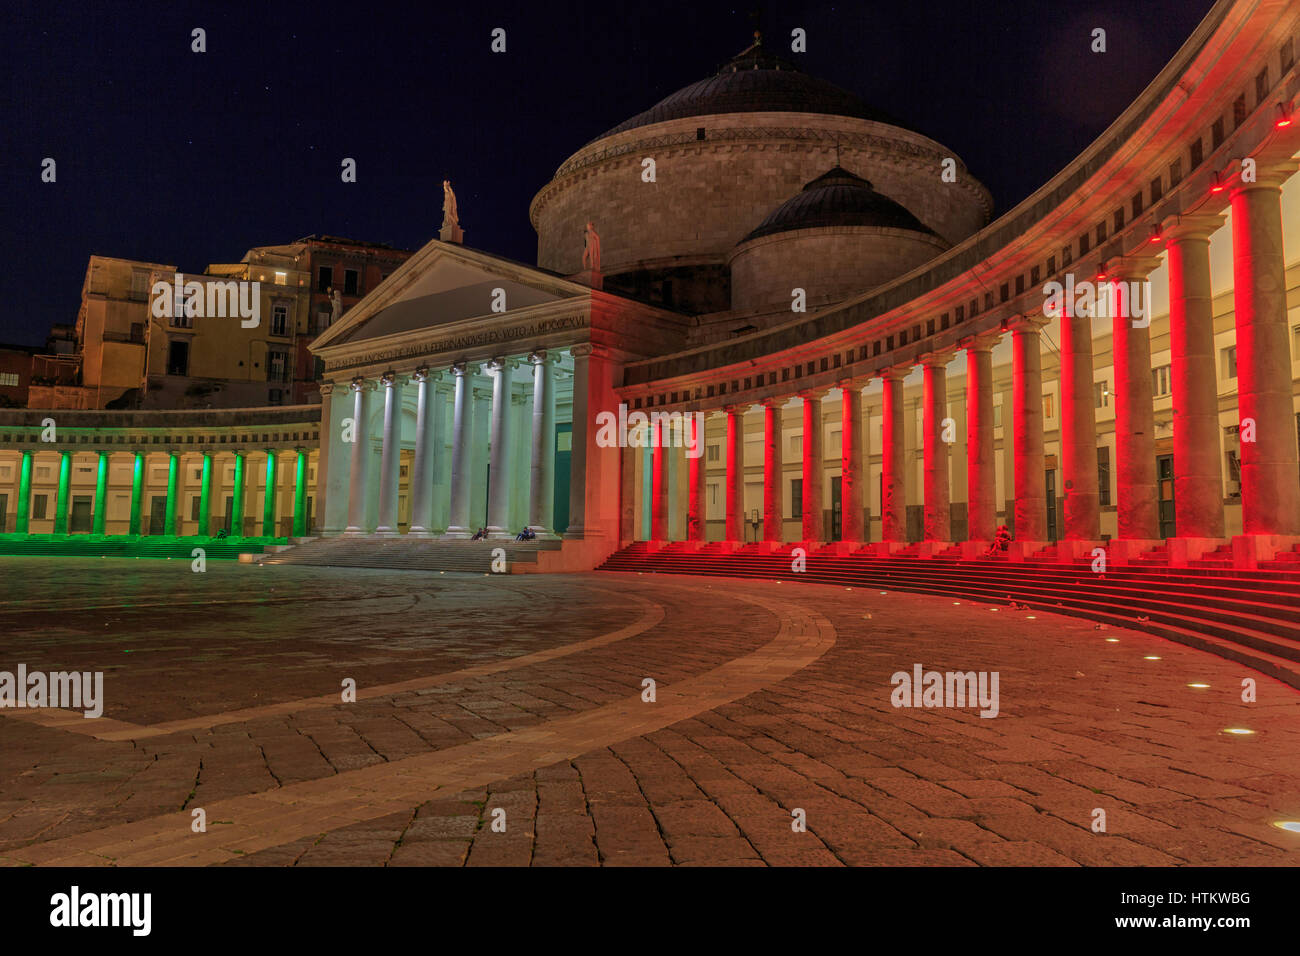 Plebiscito square by night (Piazza del Plebiscito), Napoli Stock Photo